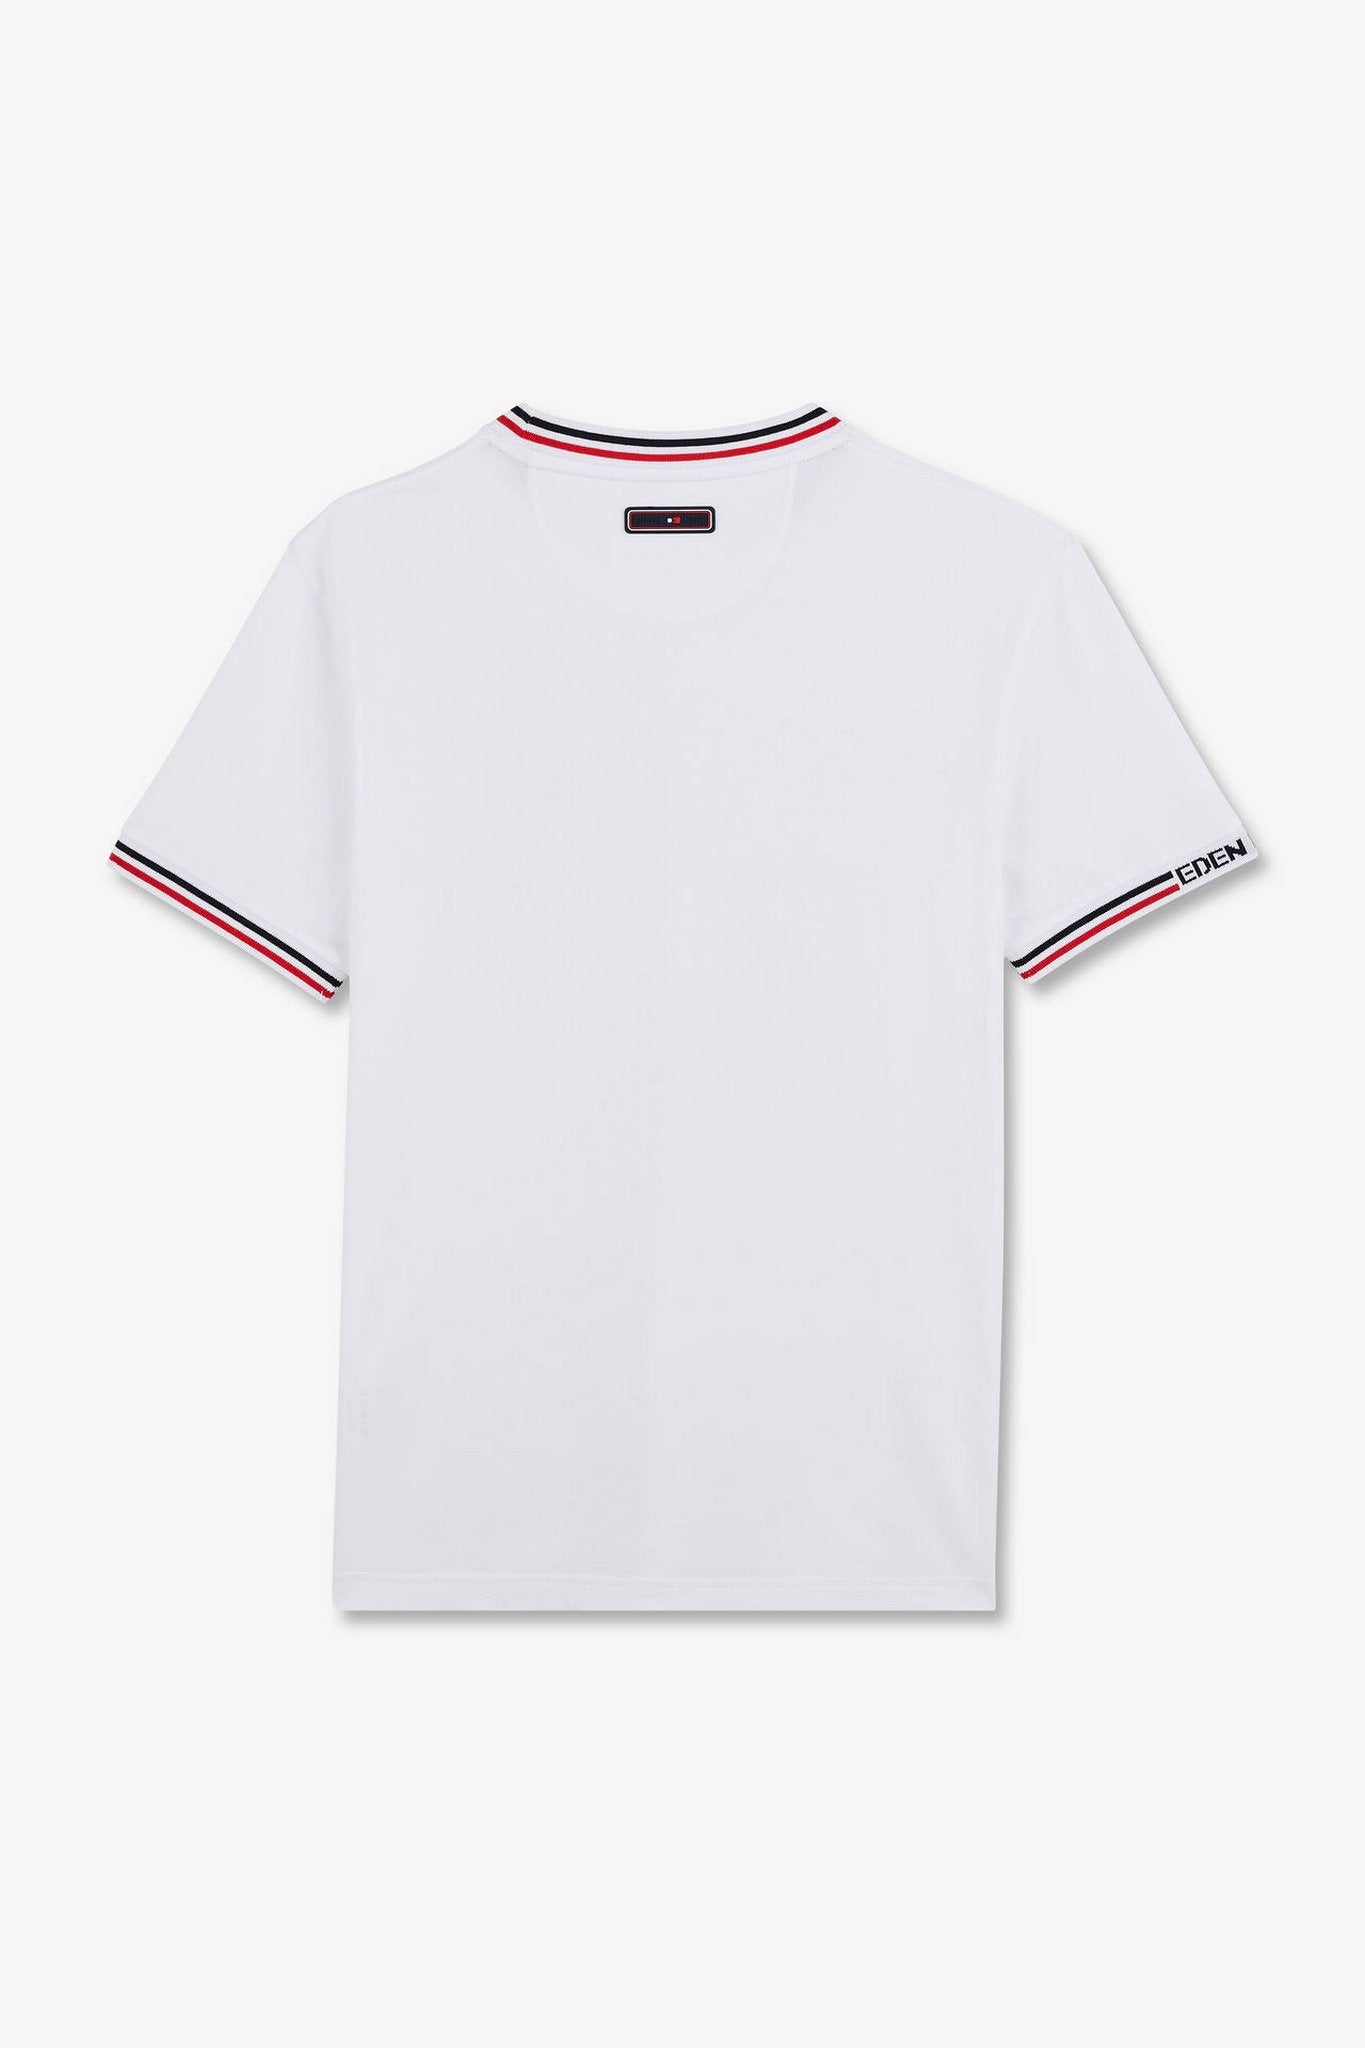 White Short-Sleeved T-Shirt_E24MAITC0024_BC_05